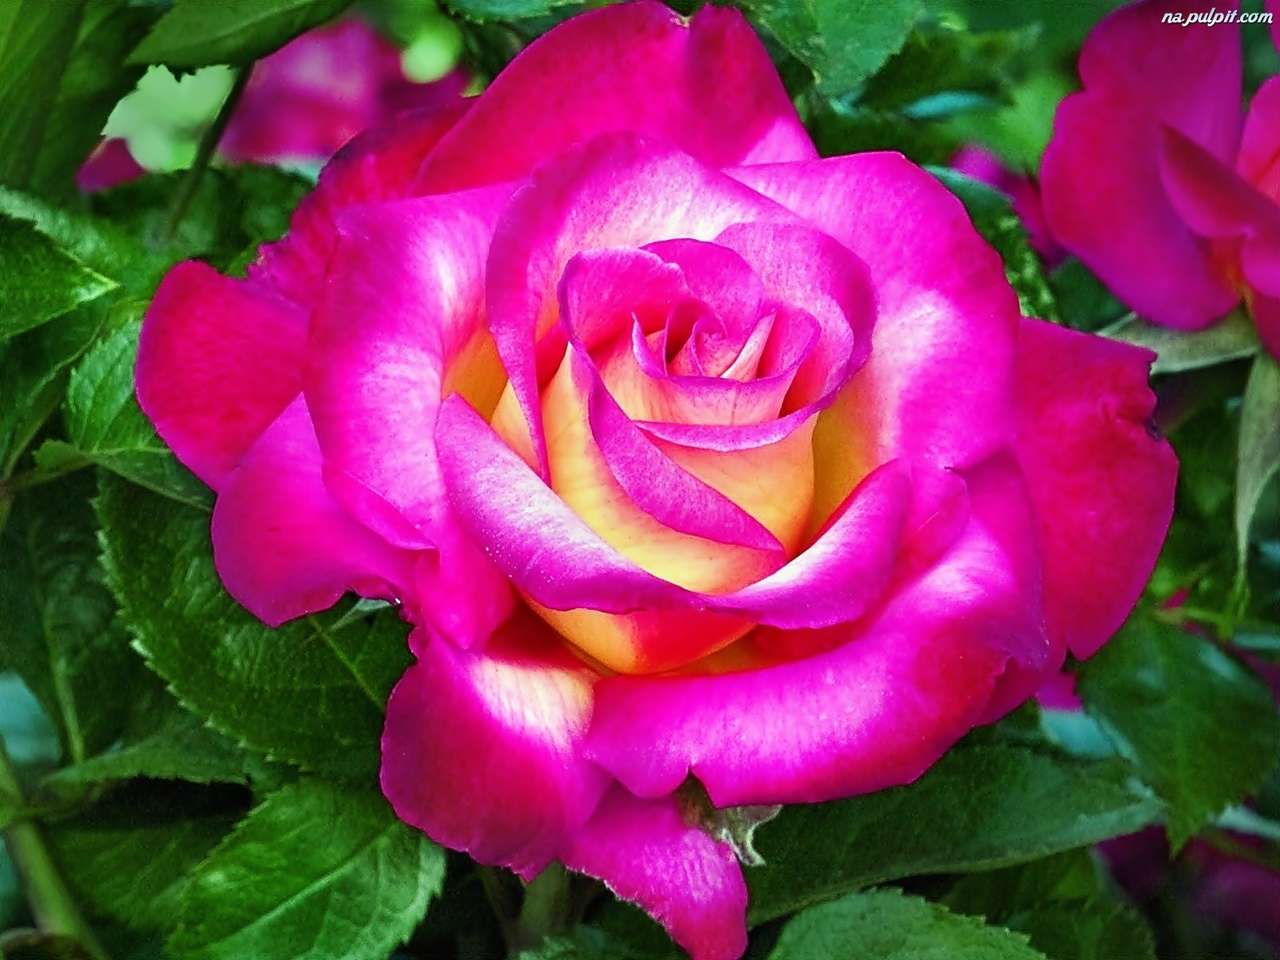 rozenkoningin der bloemen legpuzzel online